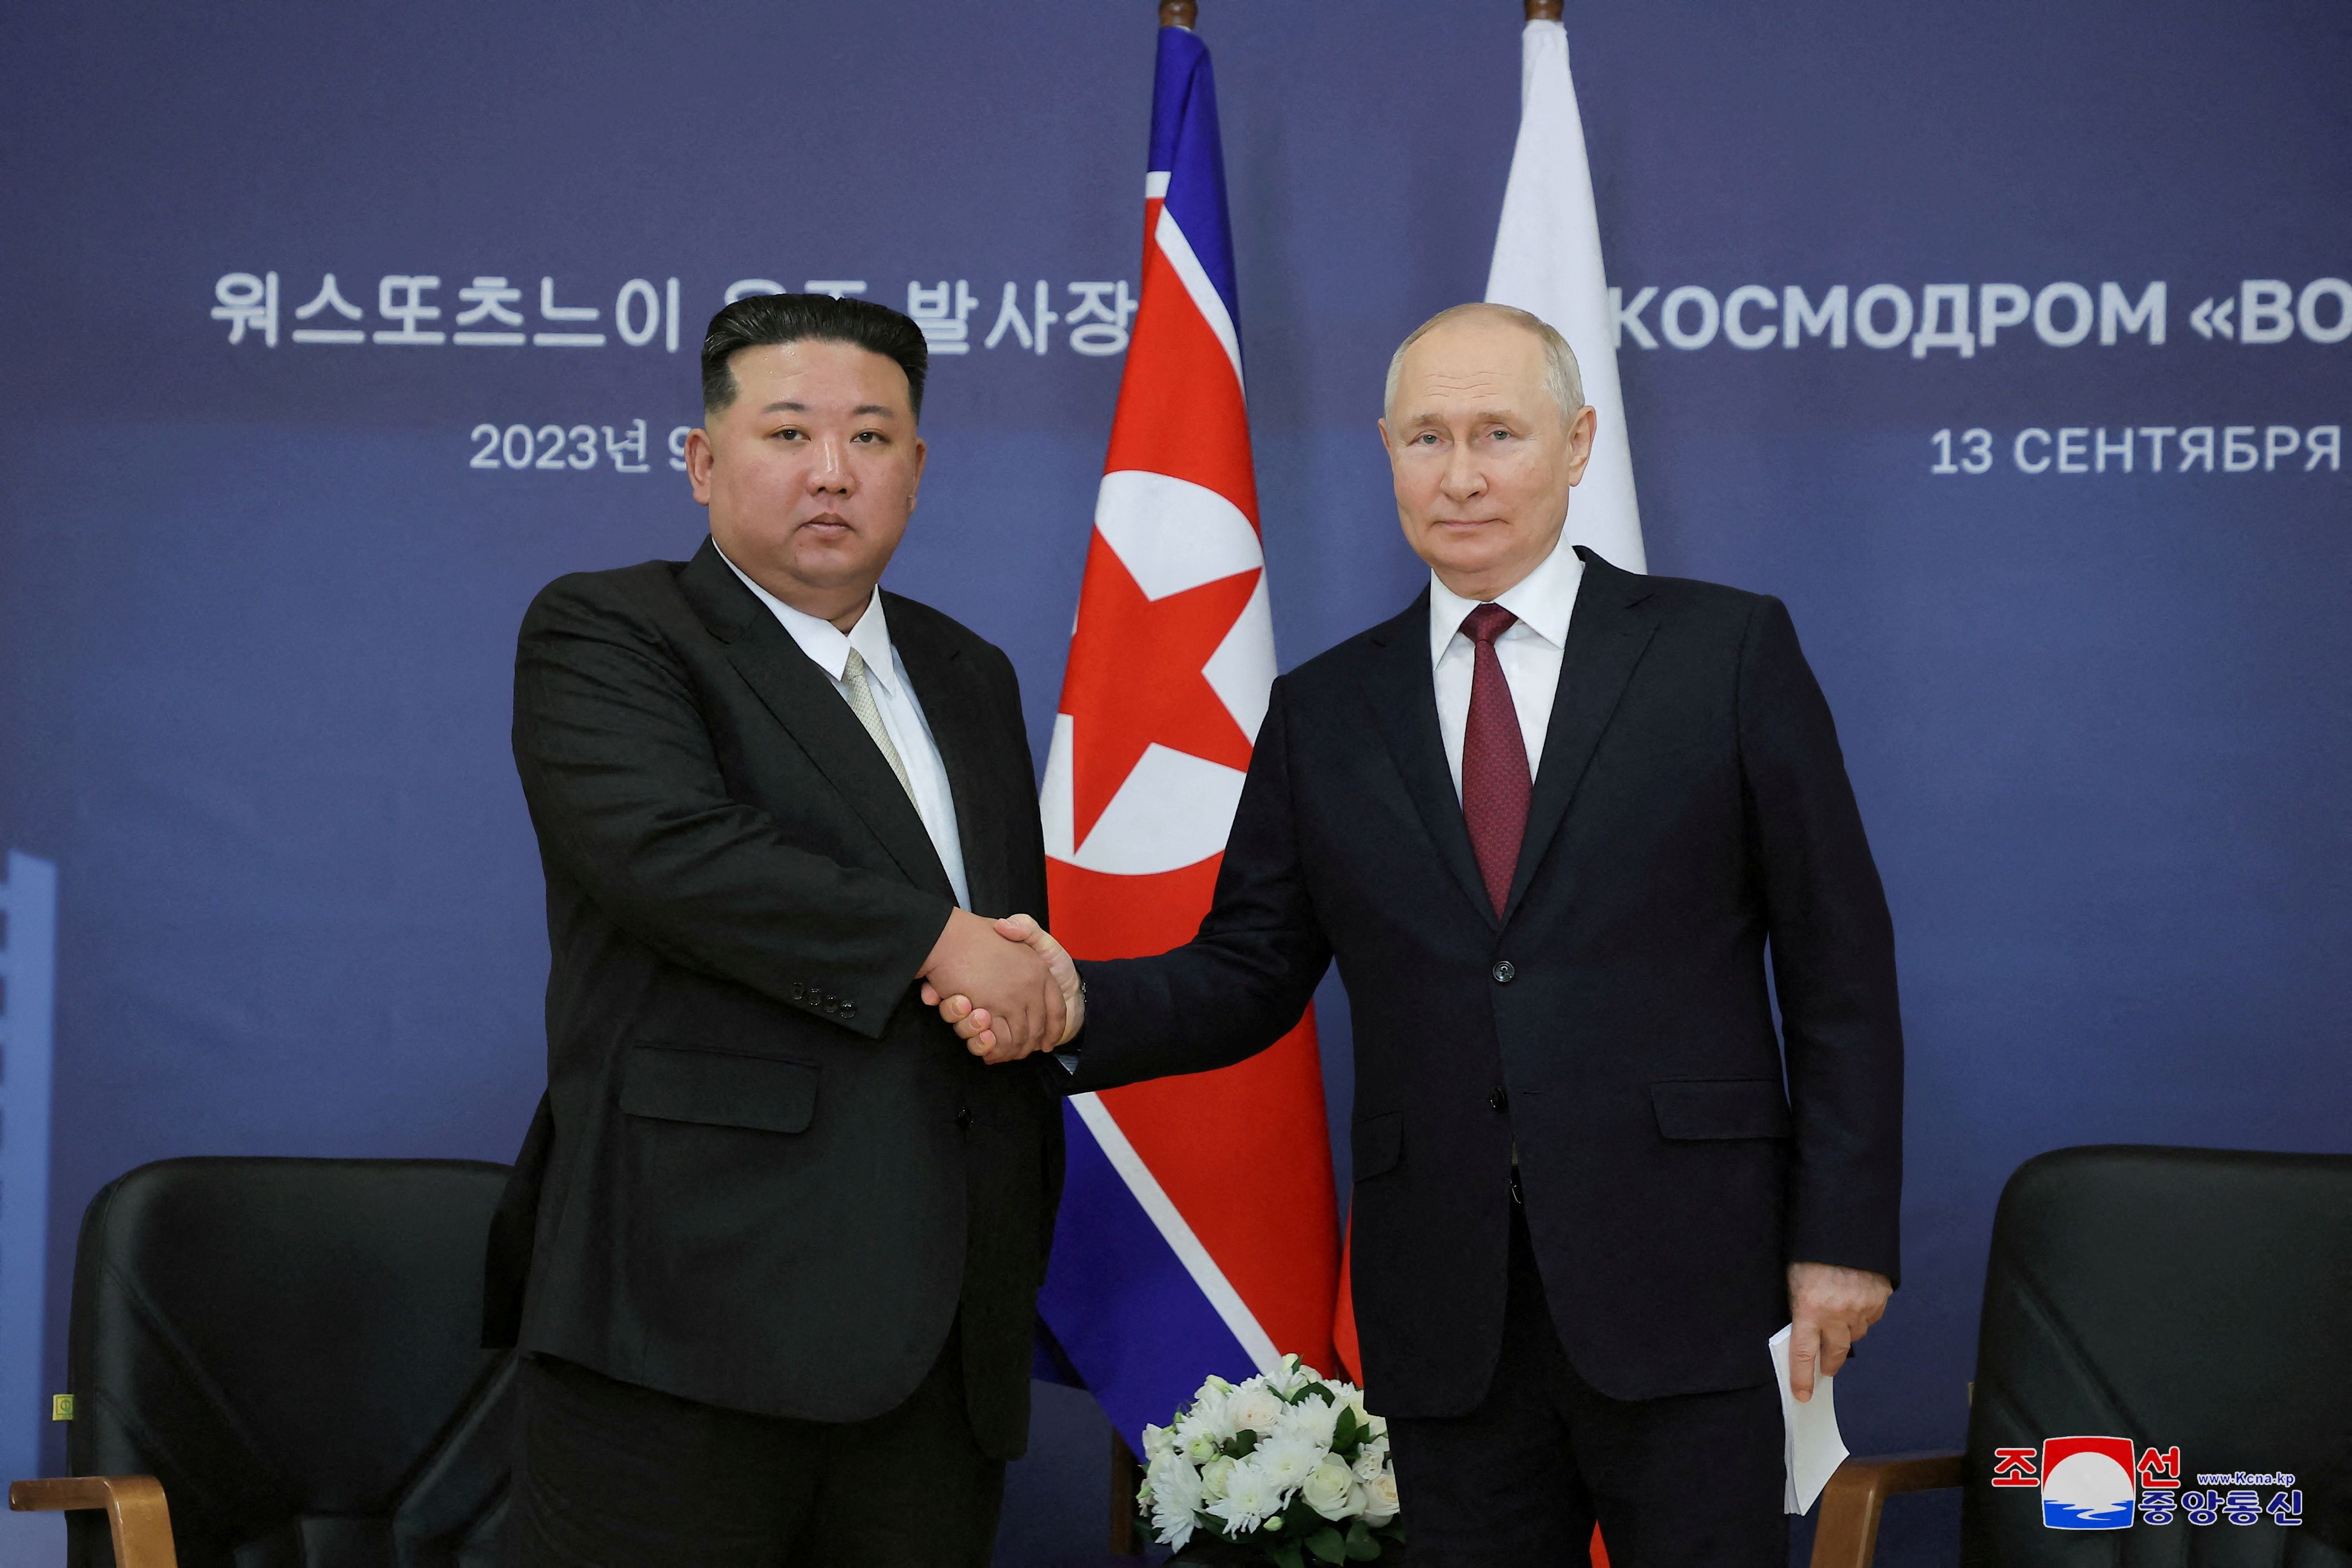 El presidente de Rusia, Vladimir Putin, y el líder de Corea del Norte, Kim Jong-un, se reunieron en el cosmódromo de Vostochny, en el extremo oriental de la región de Amur, Rusia, el 13 de septiembre de 2023 (KCNA via REUTERS)